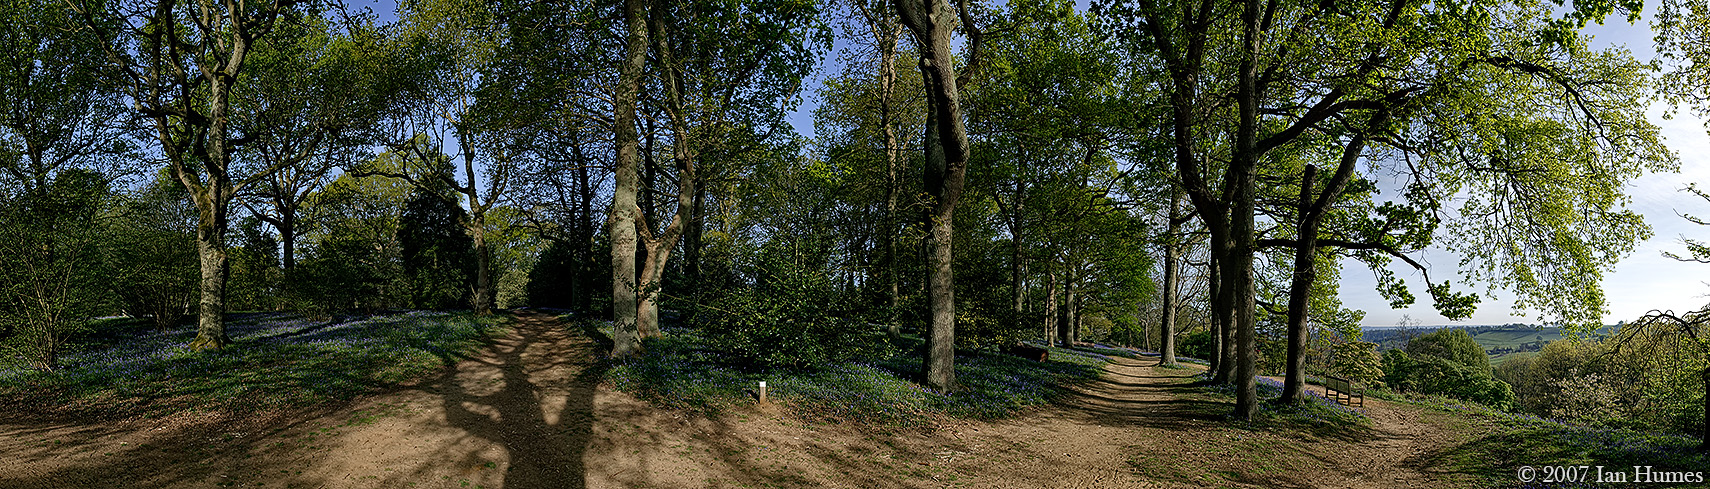 Winkworth Arboretum - Surrey